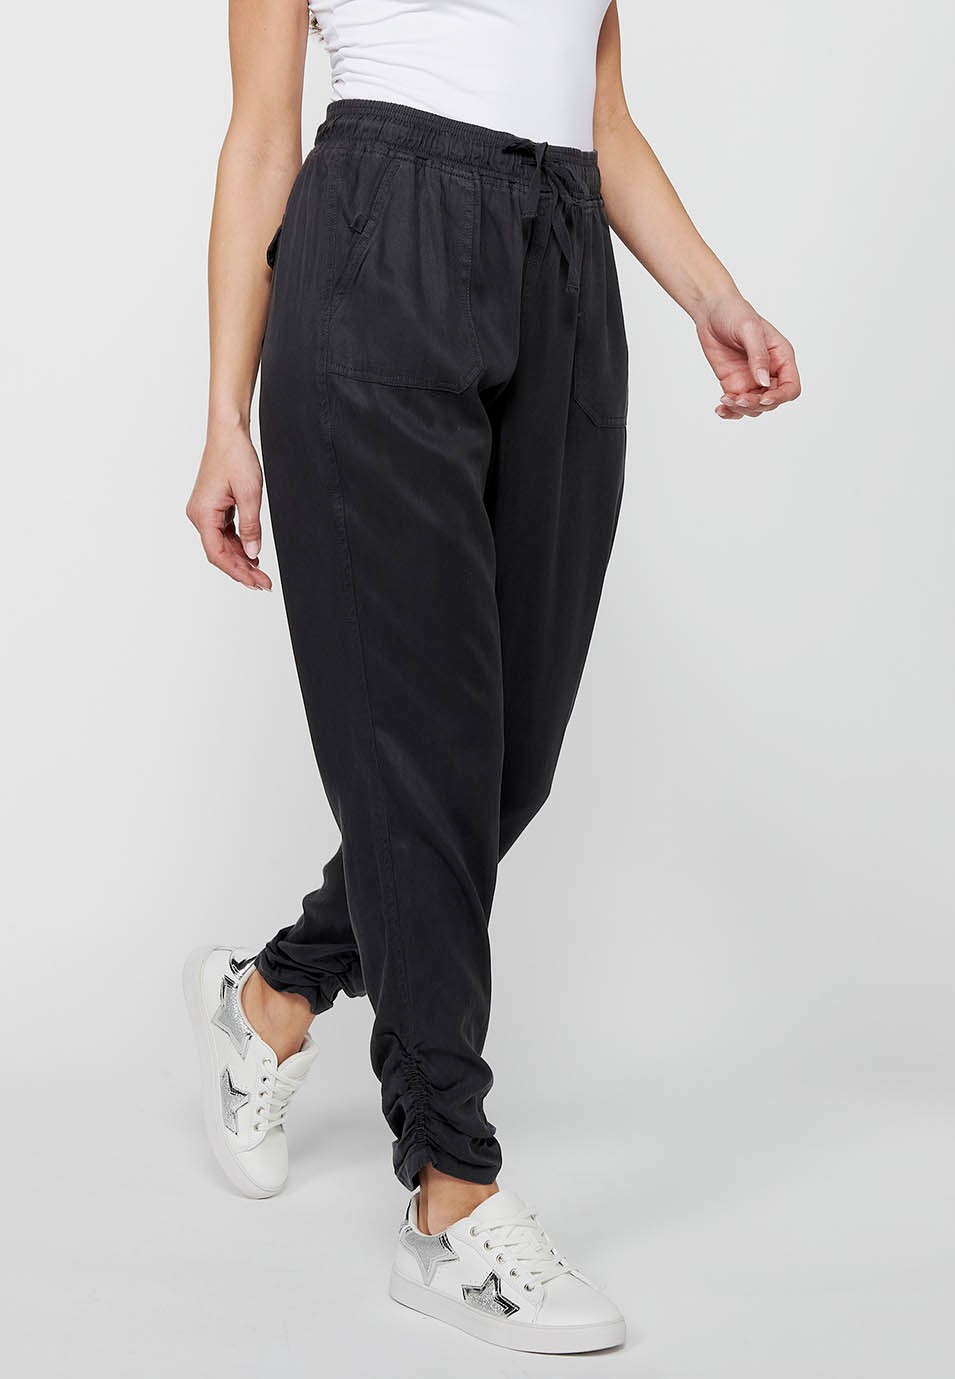 Pantalón largo jogger con Acabado rizado y Cintura engomada con Cuatro bolsillos, dos traseros con solapa de Color Negro para Mujer 3